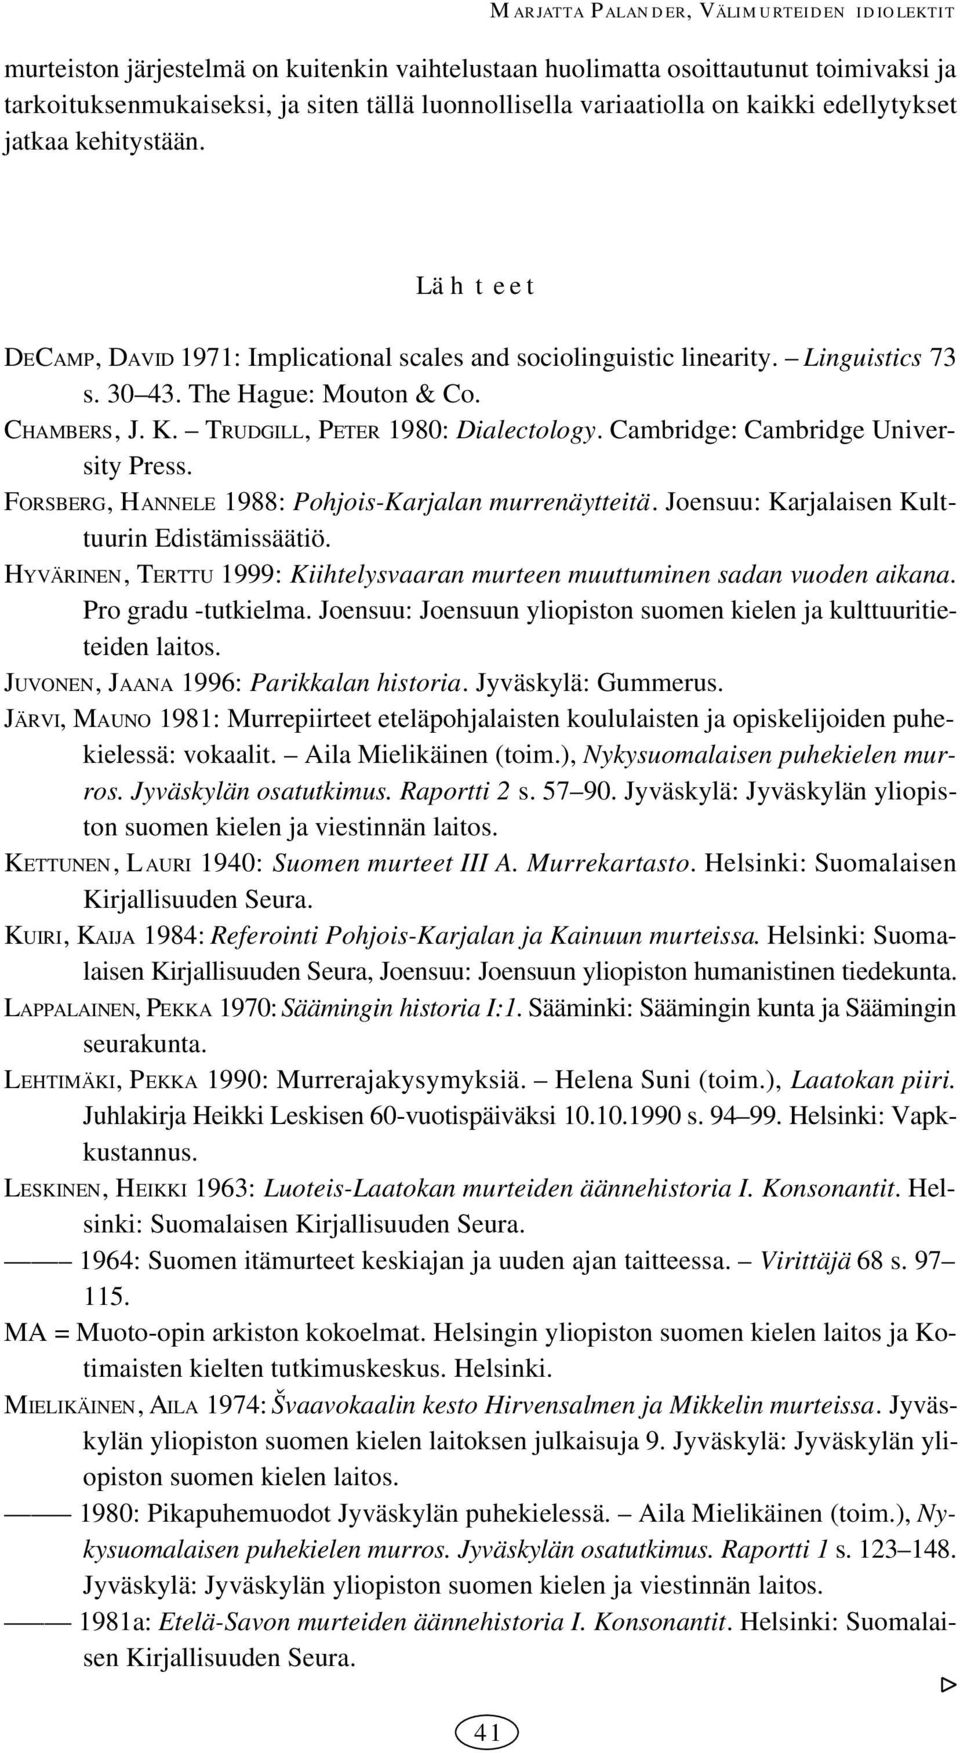 TRUDGILL, PETER 0: Dialectology. Cambridge: Cambridge University Press. FORSBERG, HANNELE : PohjoisKarjalan murrenäytteitä. Joensuu: Karjalaisen Kulttuurin Edistämissäätiö.